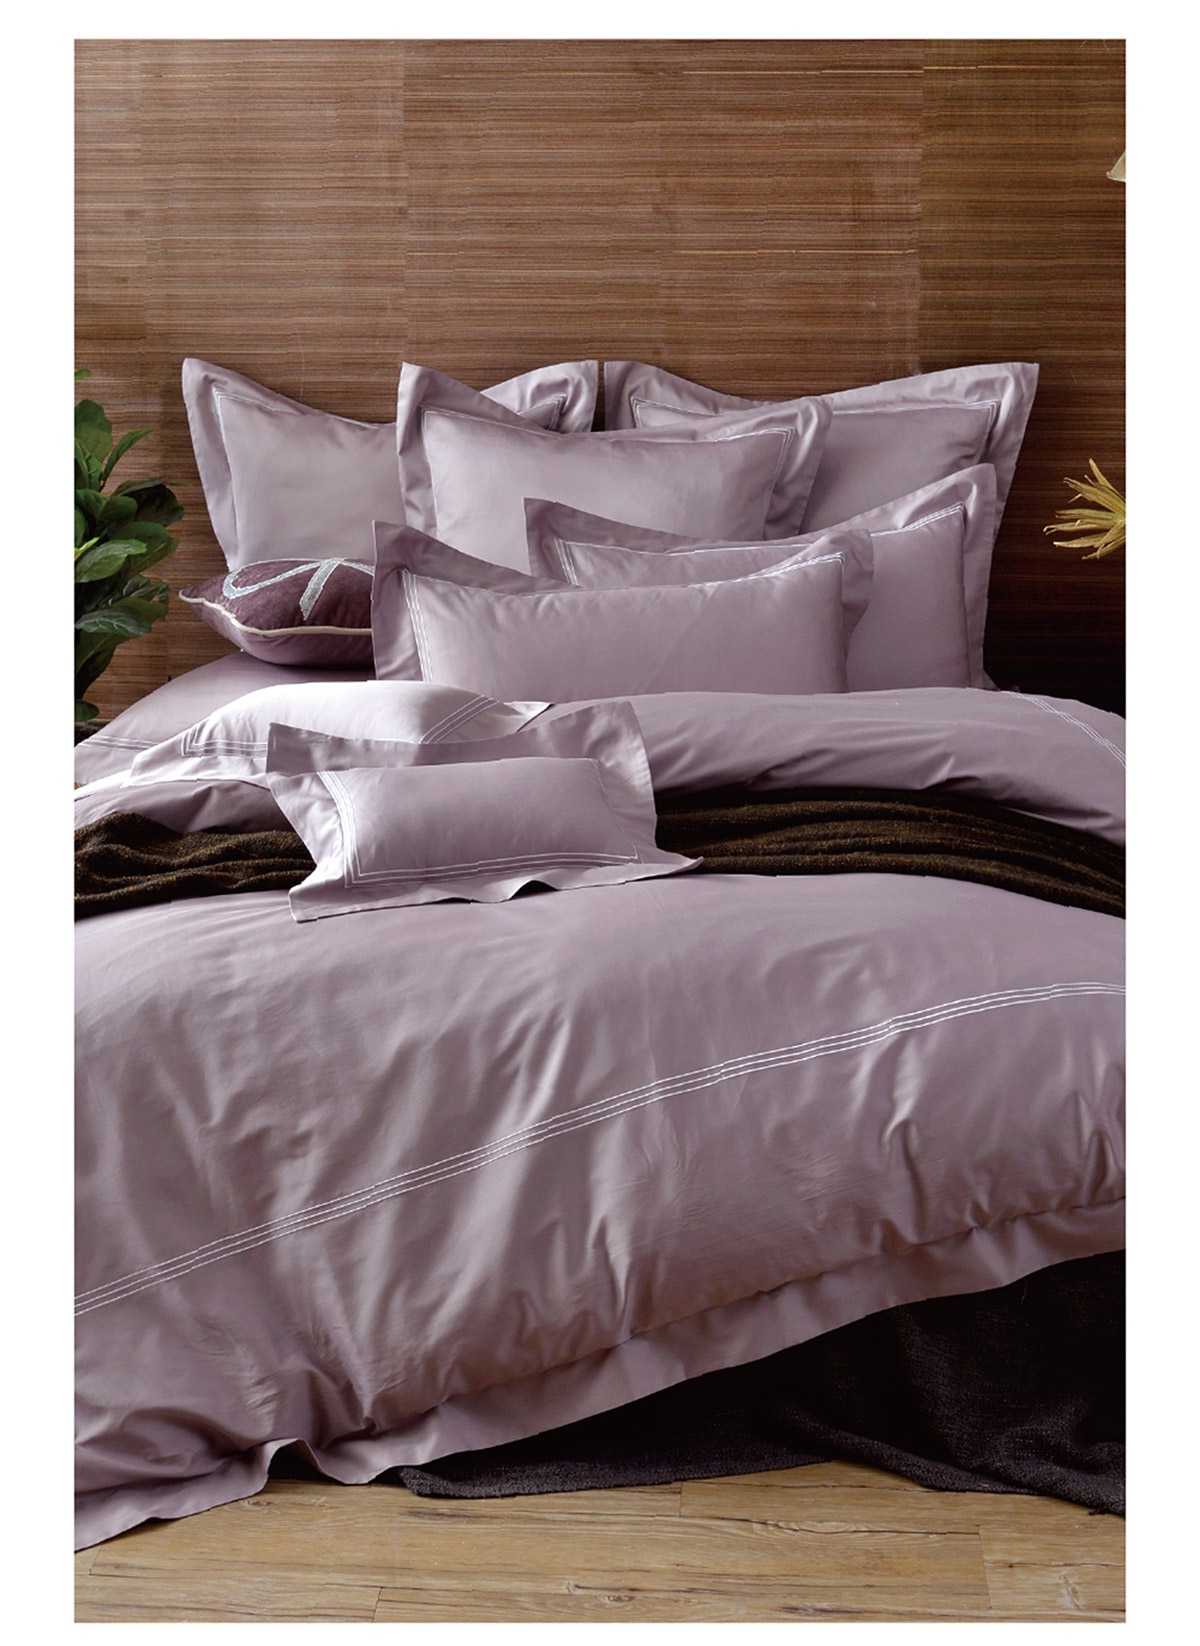 雙人刺繡被套床包四件組-甜藕粉,本床組僅含床包被套枕套四件套組.